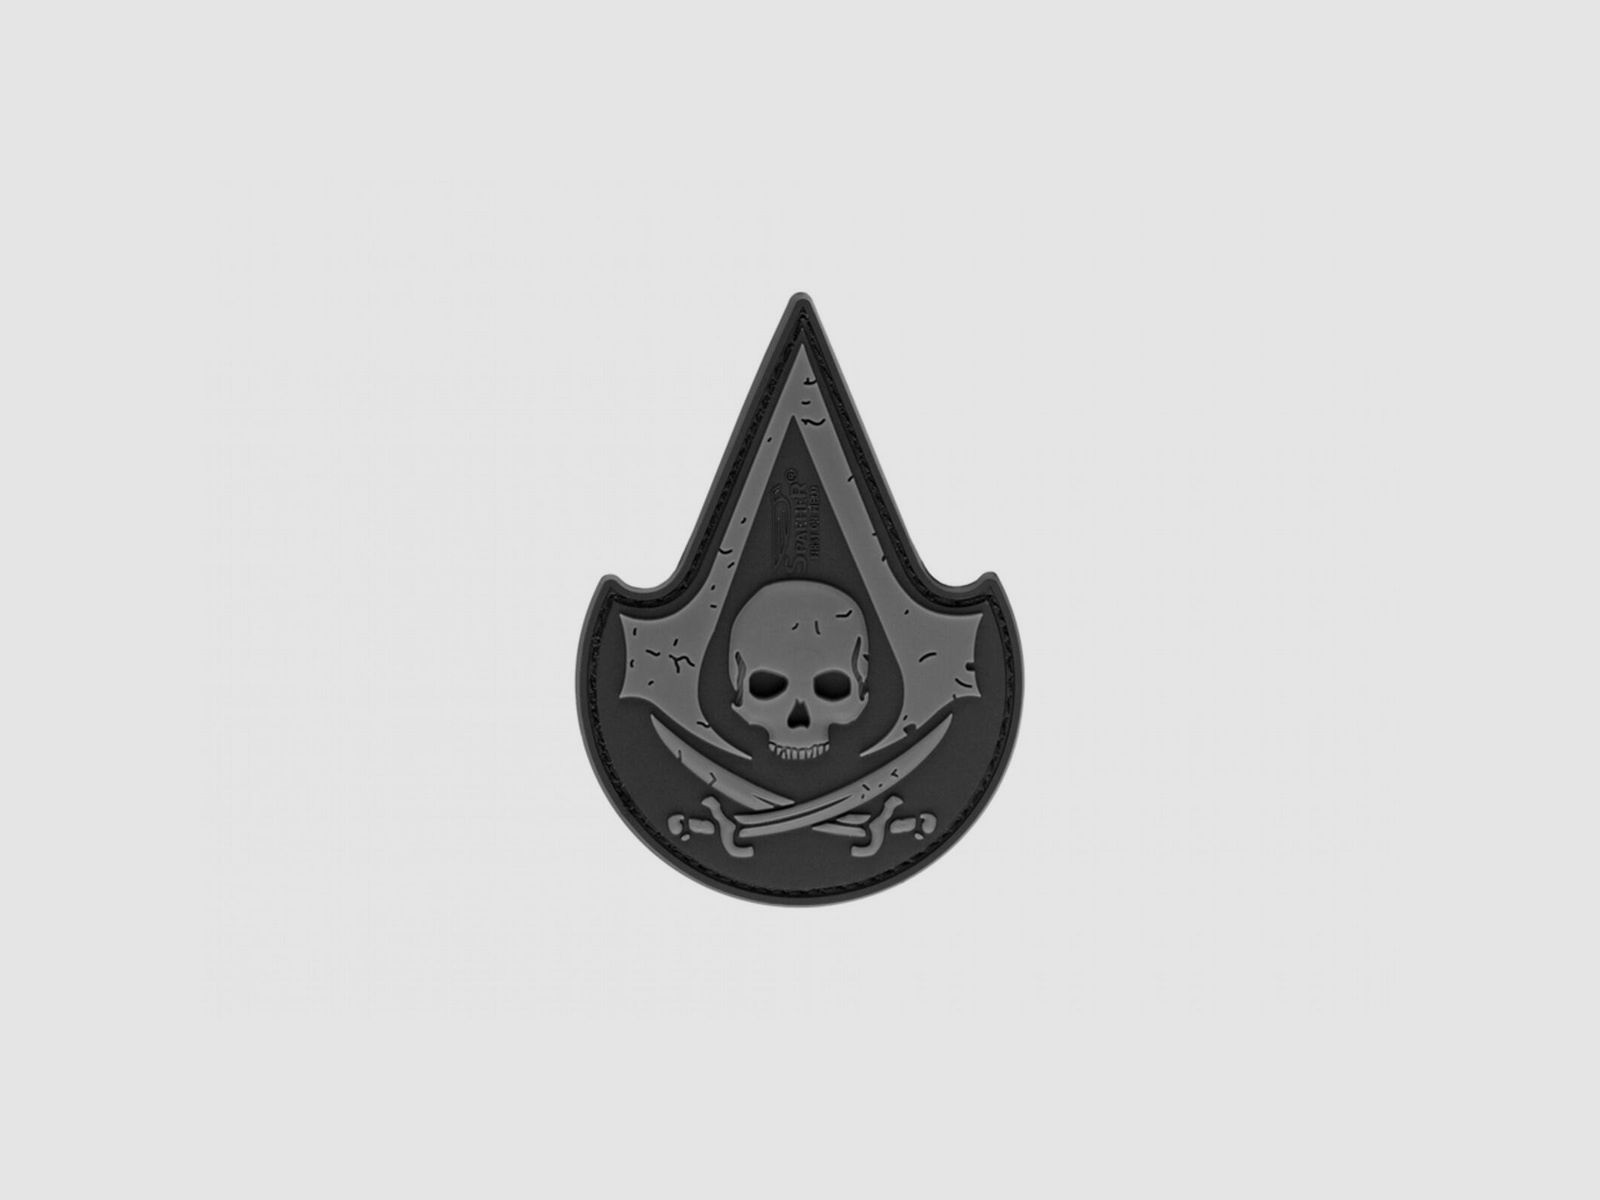 JTG Assassin Skull Rubber Patch-SWAT